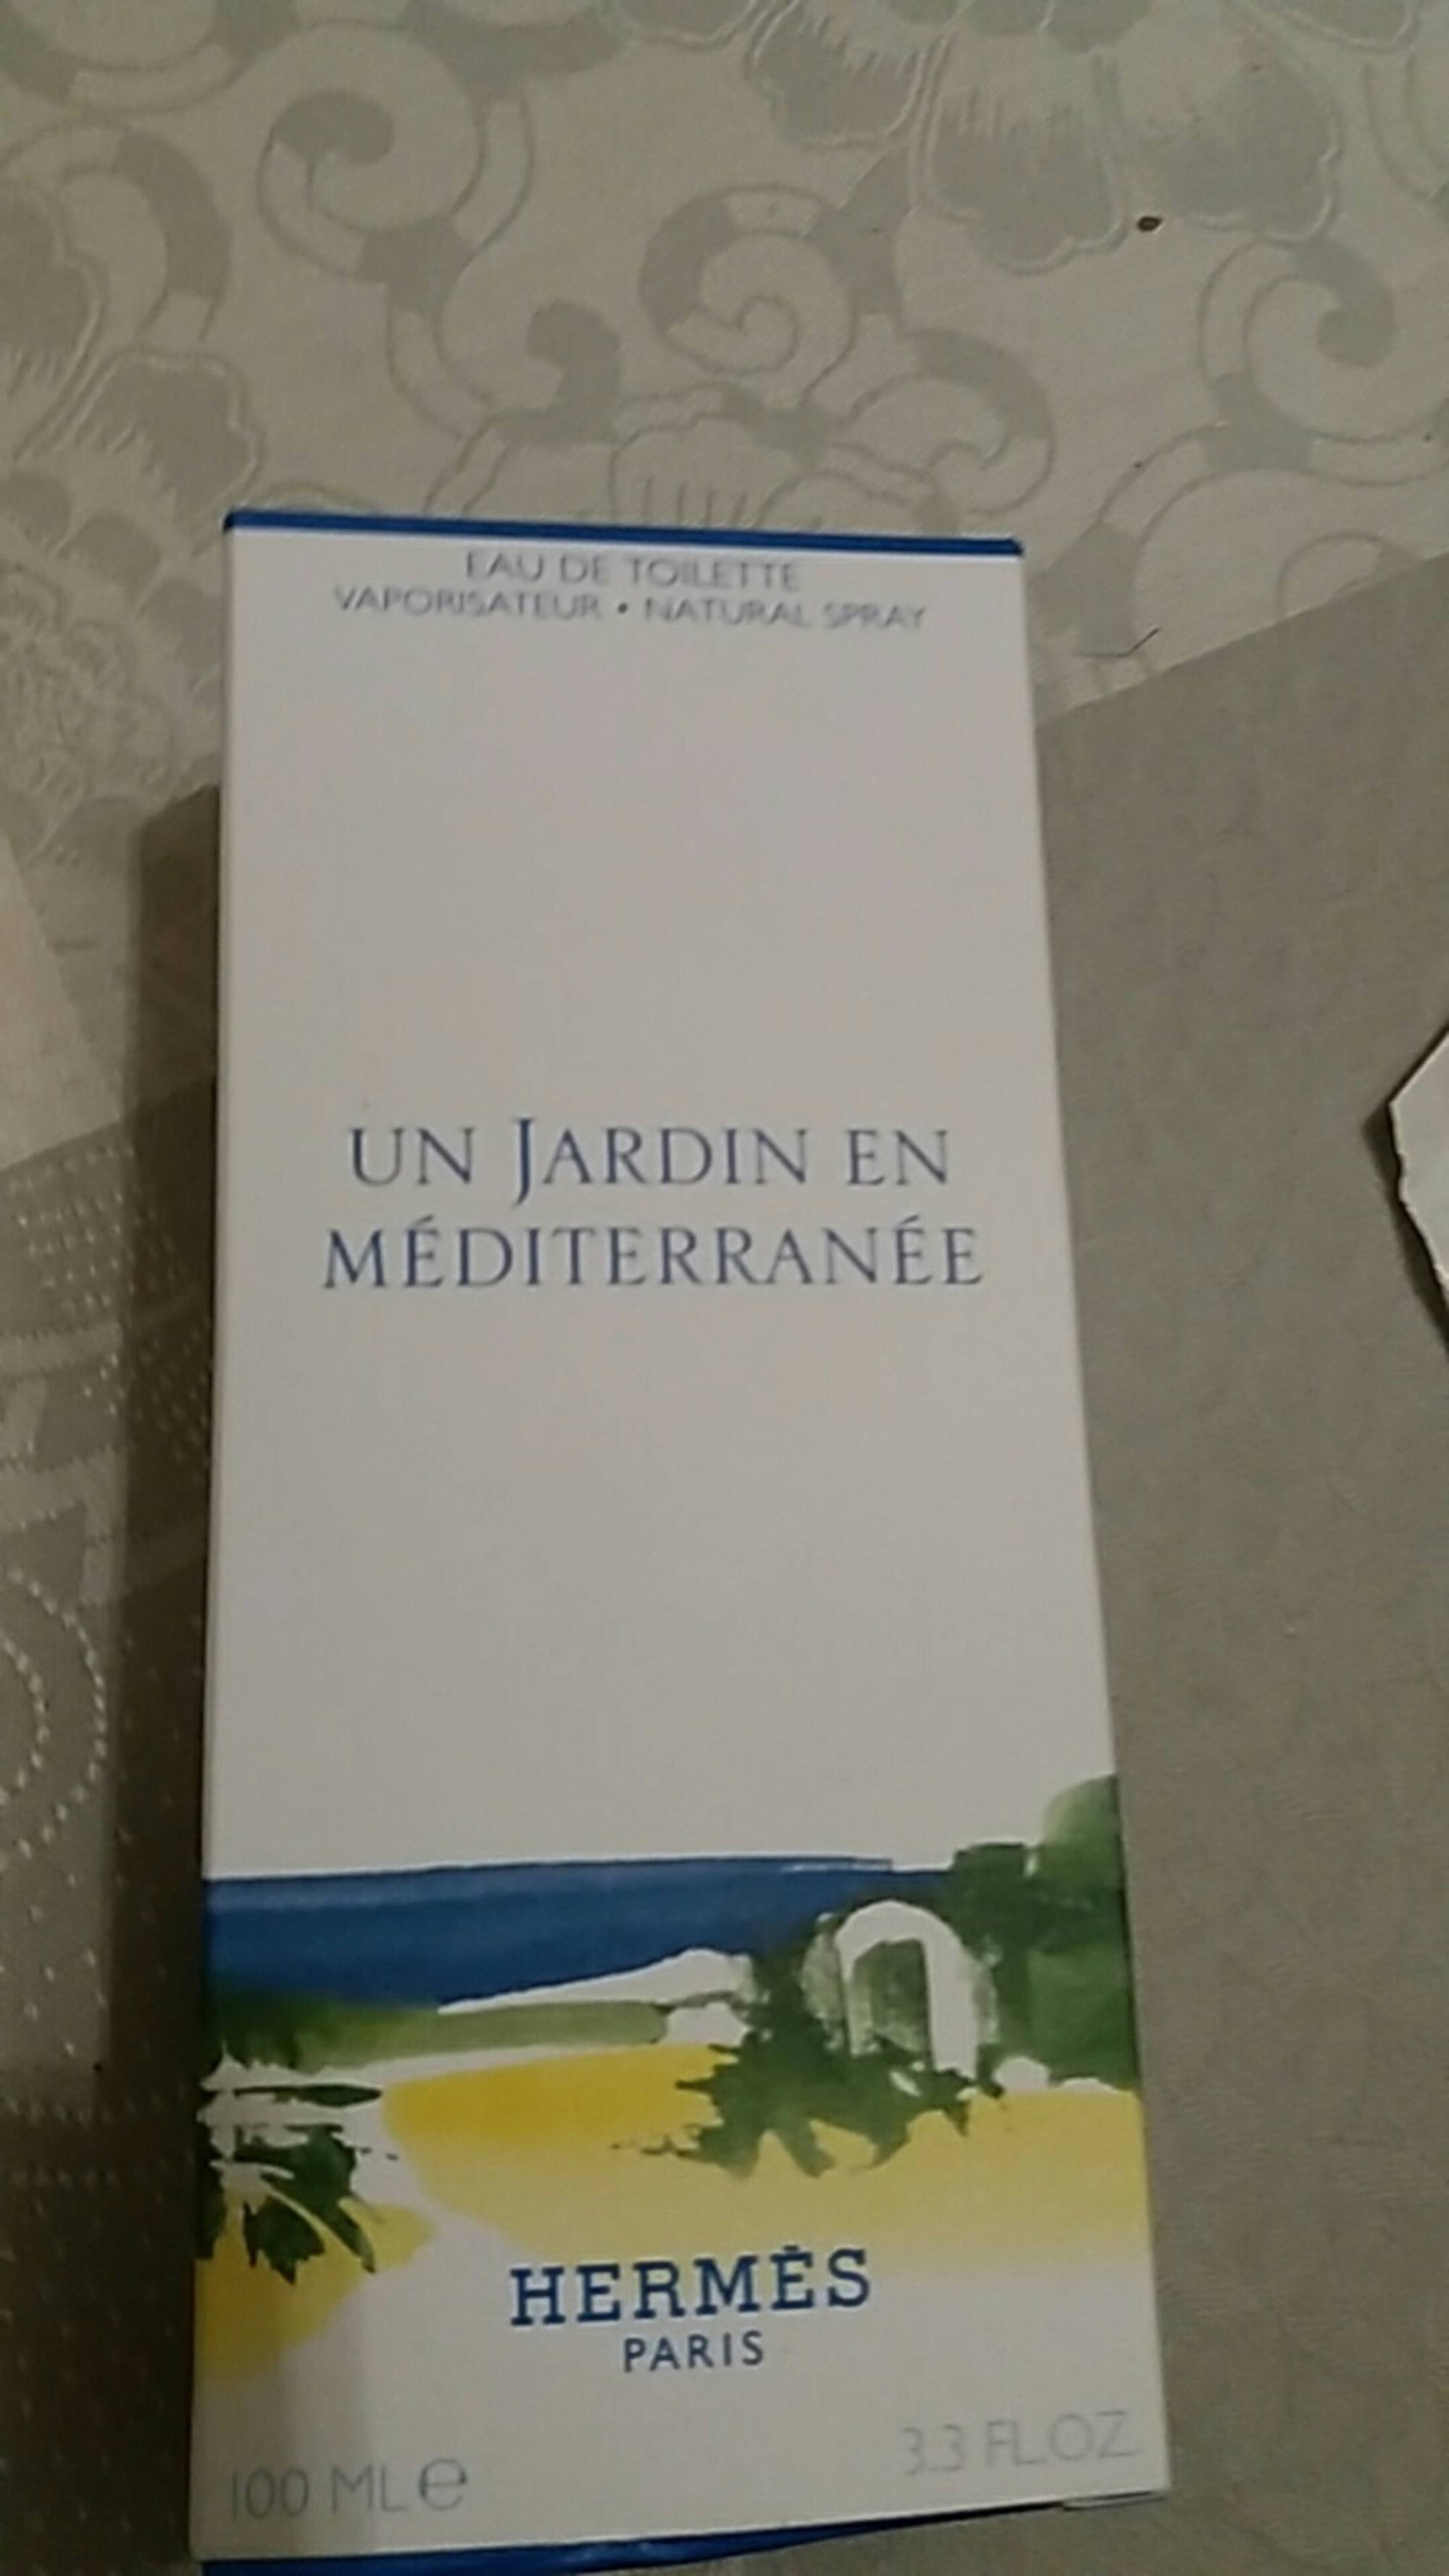 HERMES - Un Jardin en Méditerranée - Eau de toilette 